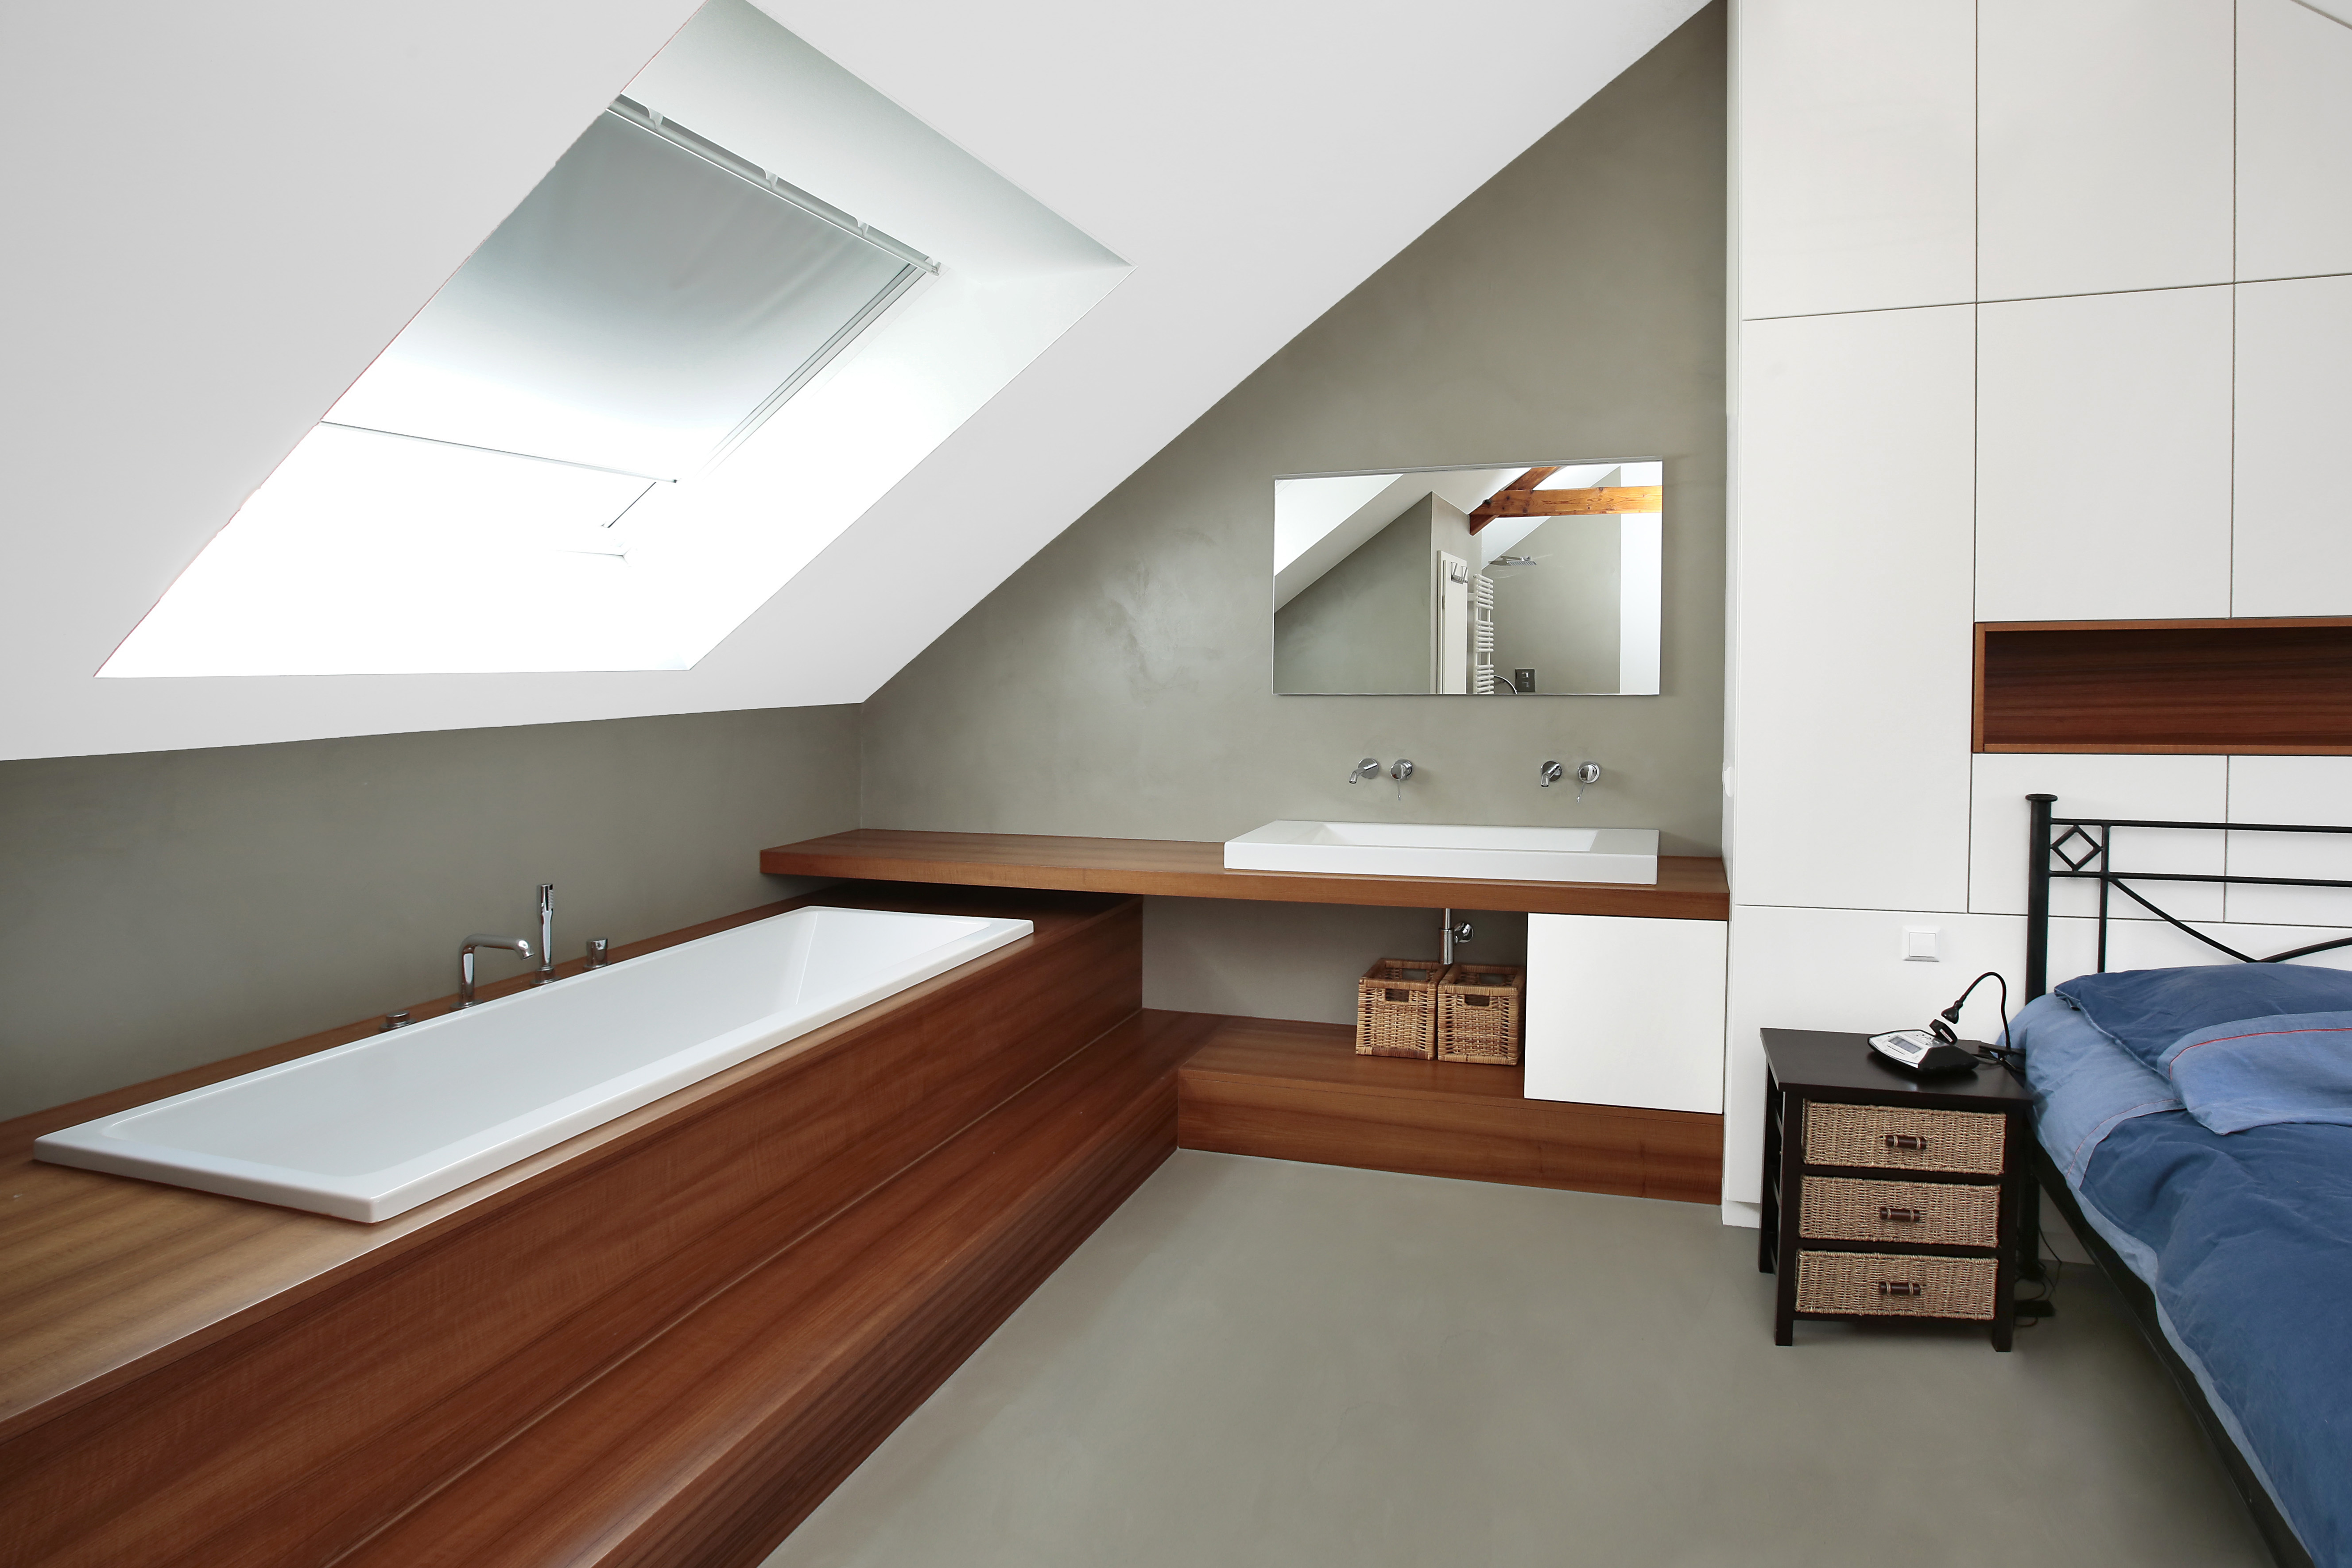 Piso de microcimento em quarto com banheira integrada